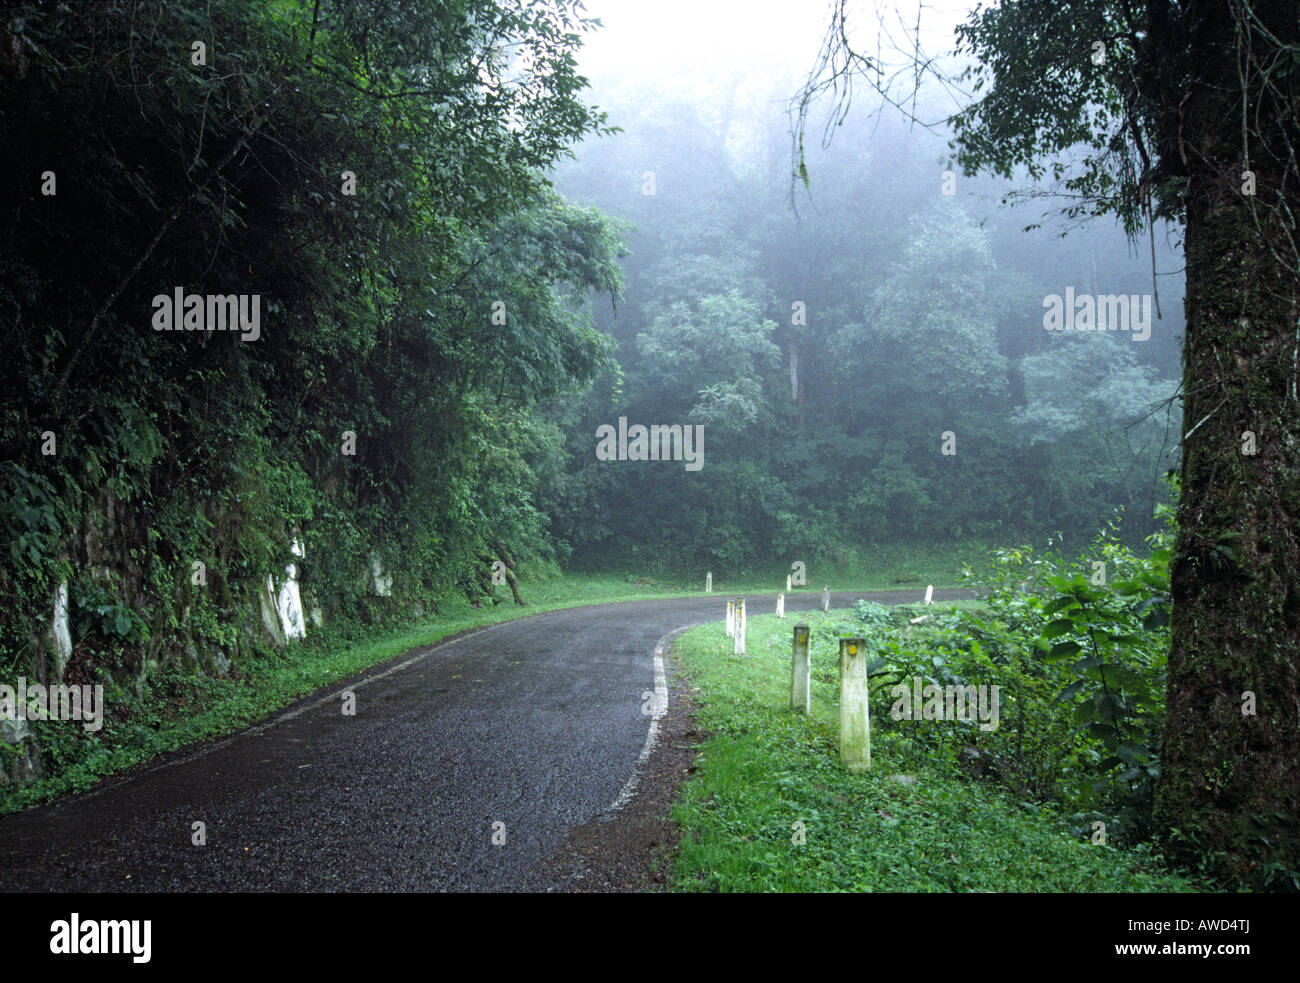 Carretera de montaña denominada "cornisa" unirse carretera salta a ciudades de Jujuy en Argentina y cruzando a través de un bosque lluvioso Foto de stock